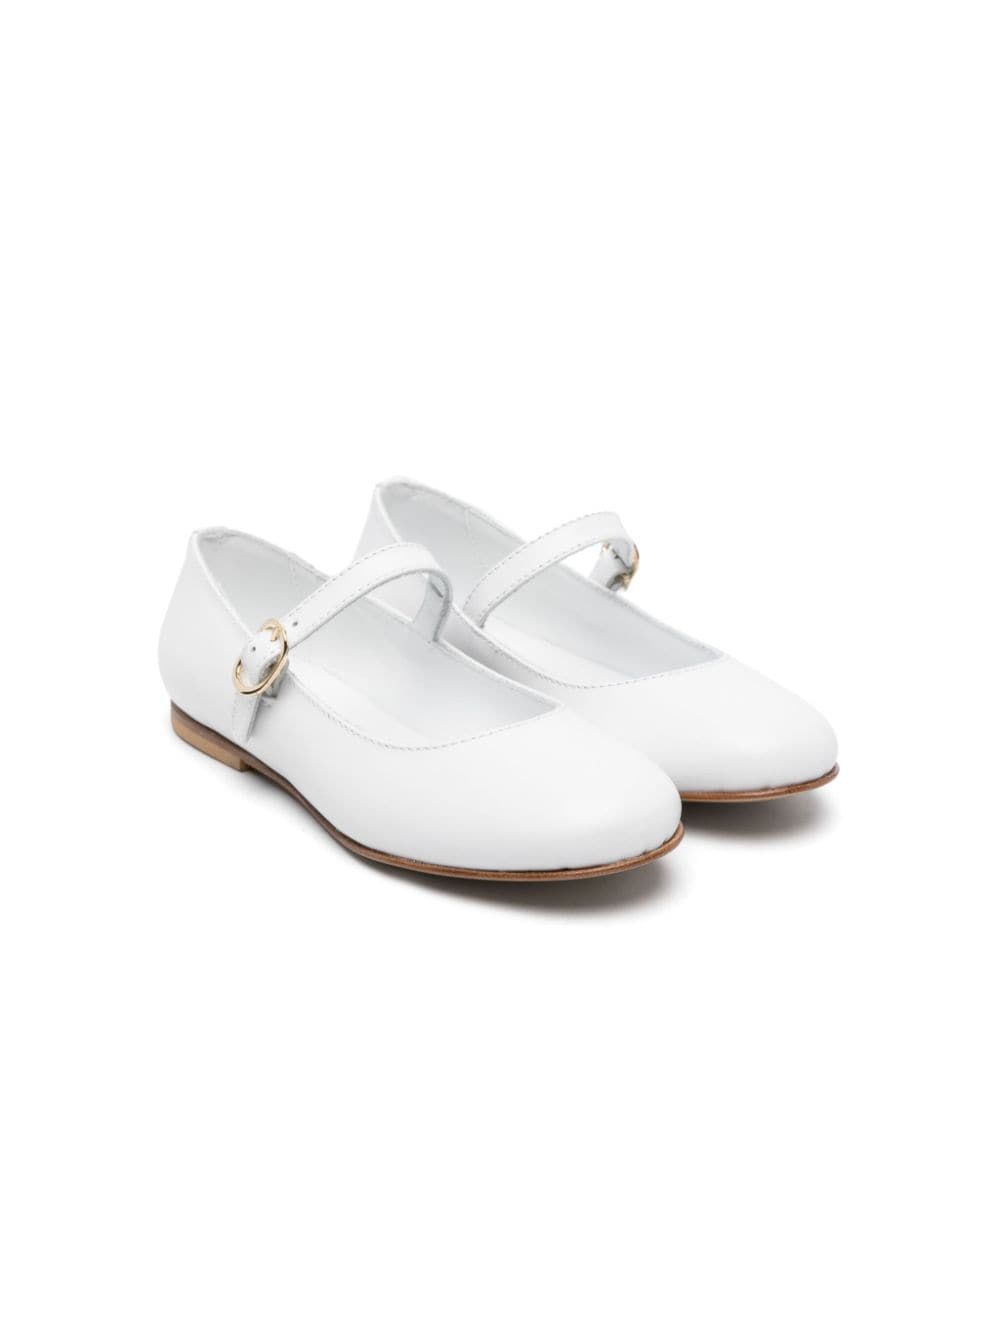 Andrea Montelpare Tresor leather ballerina shoes - White von Andrea Montelpare